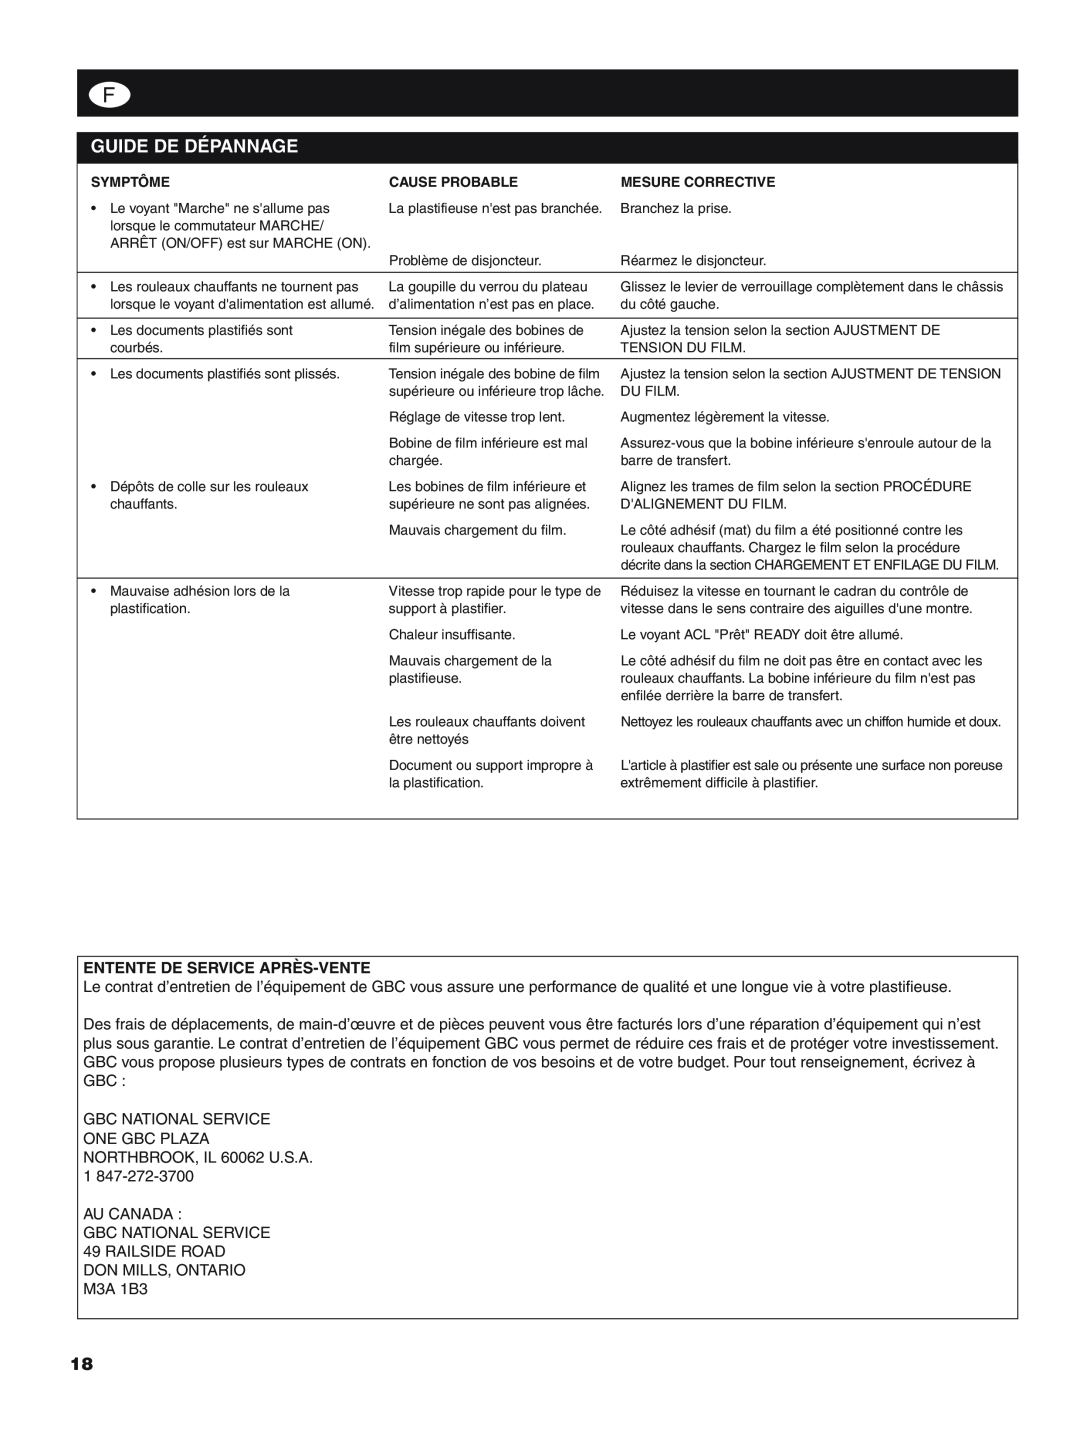 GBC H800 PRO-R manual Guide De Dépannage, Entente De Service Après-Vente 